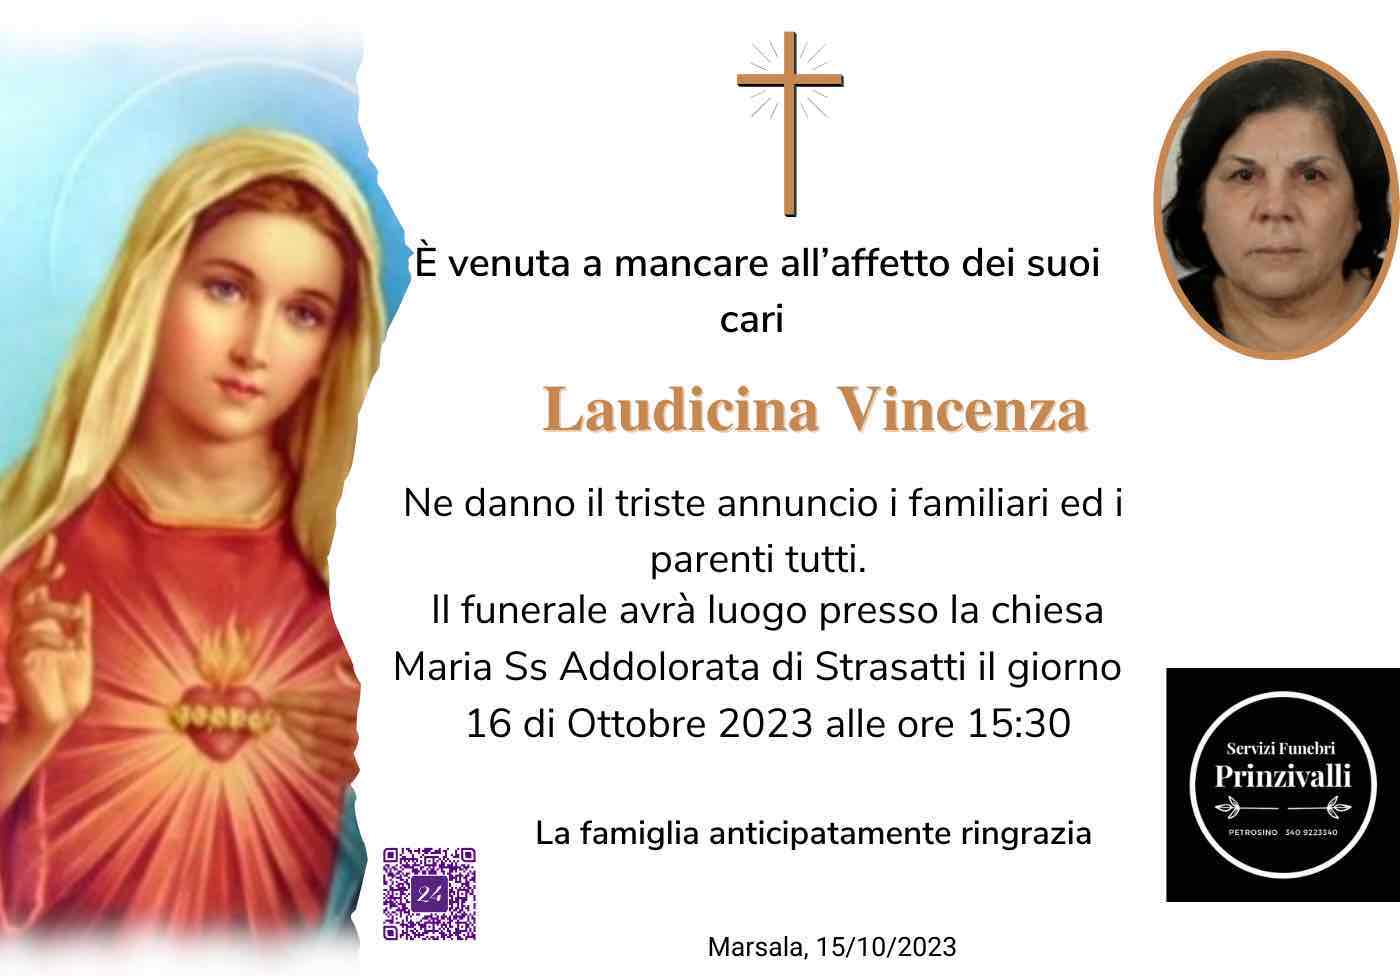 Vincenza Laudicina